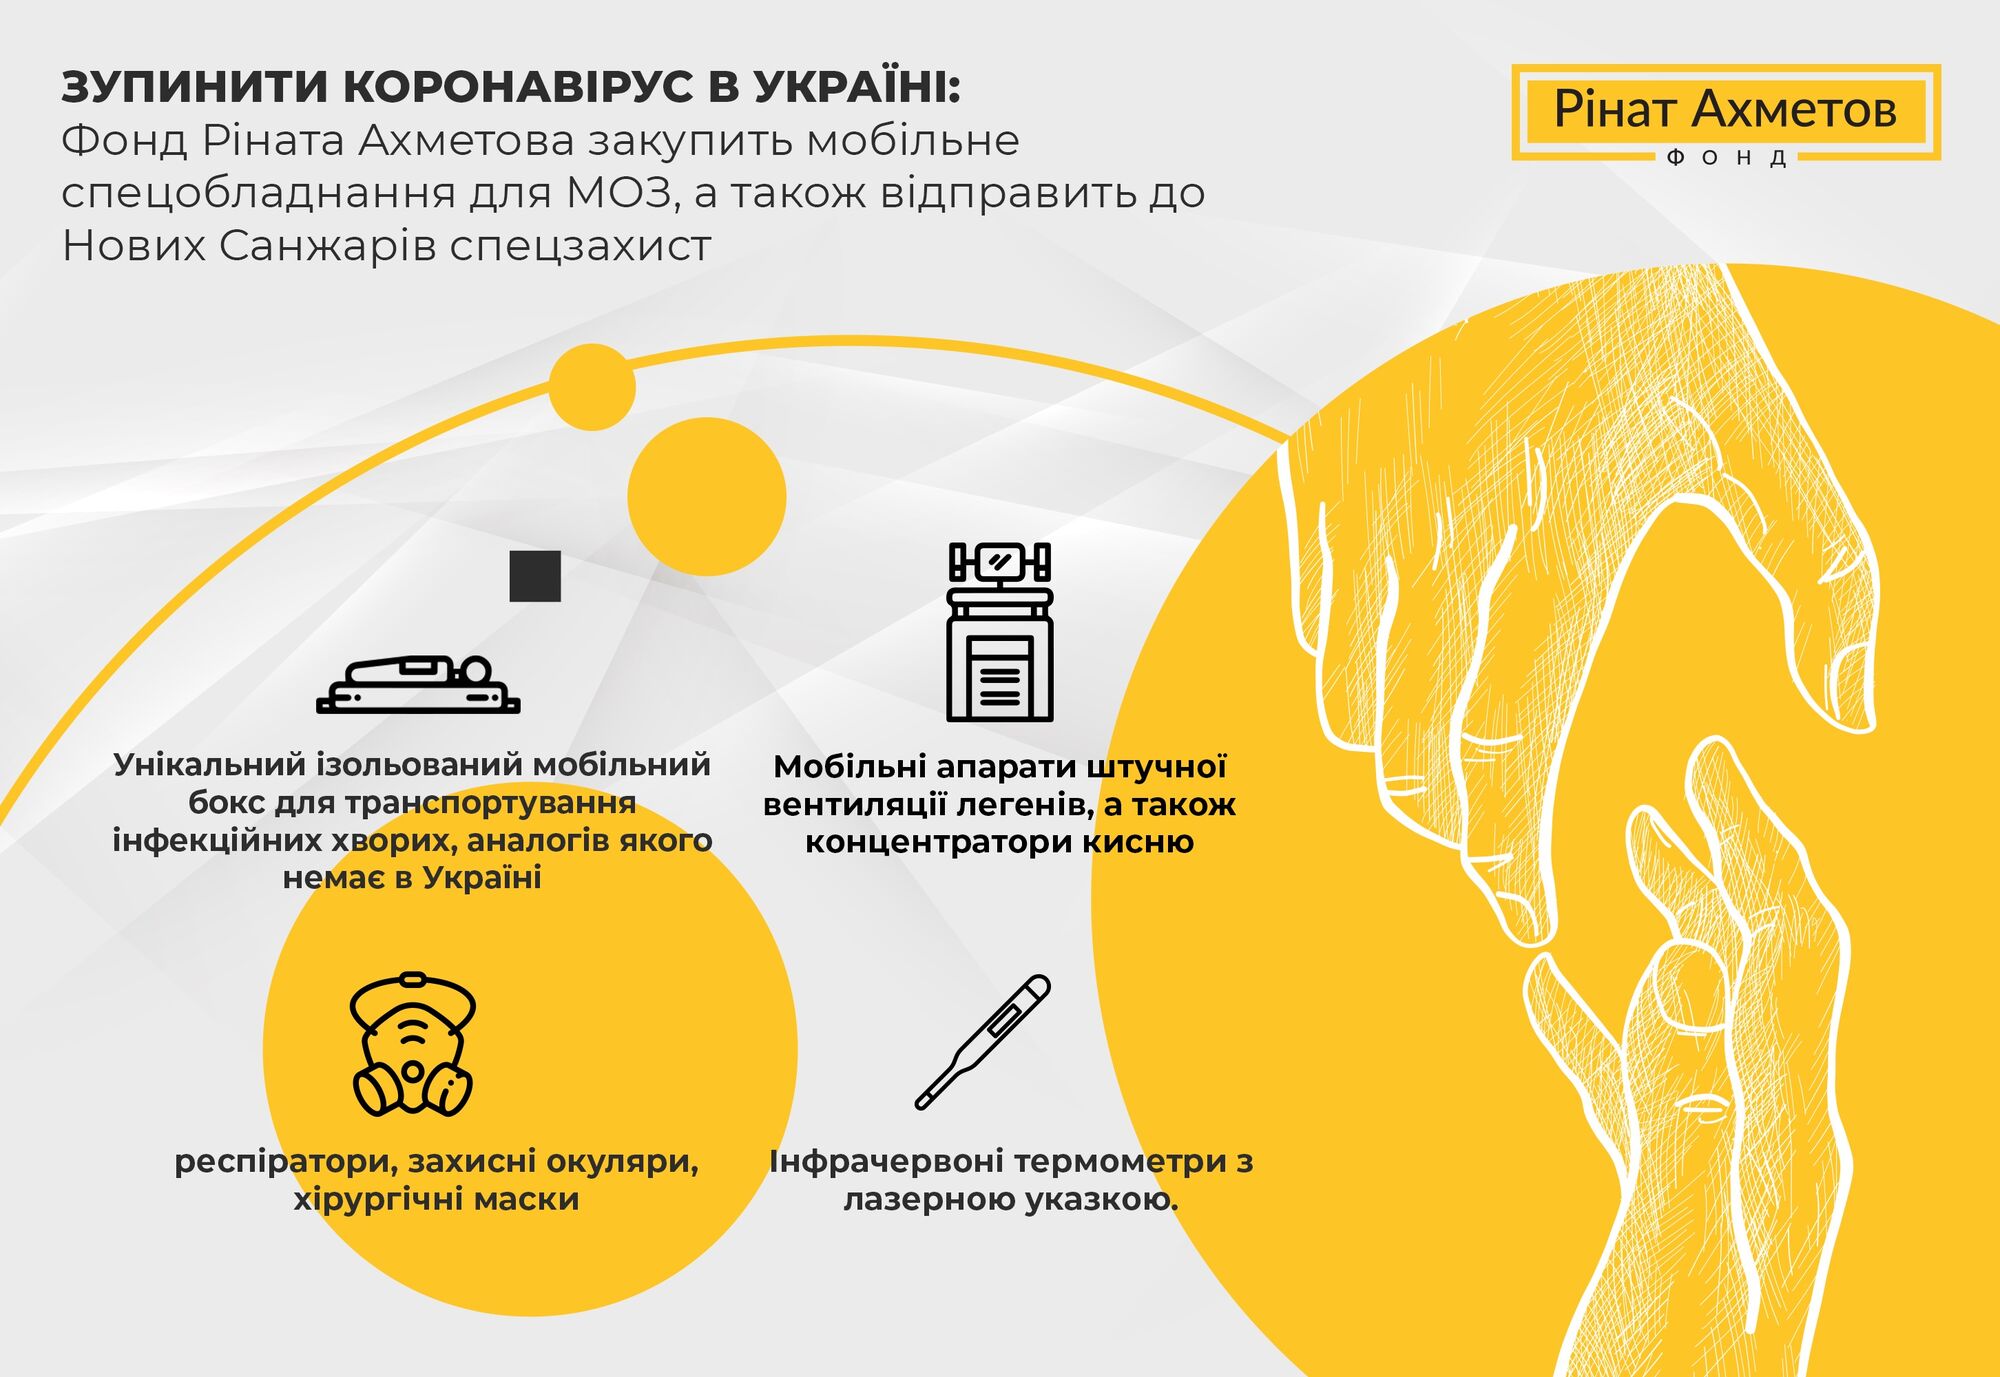 Фонд Рината Ахметова поможет МОЗ остановить коронавирус в Украине